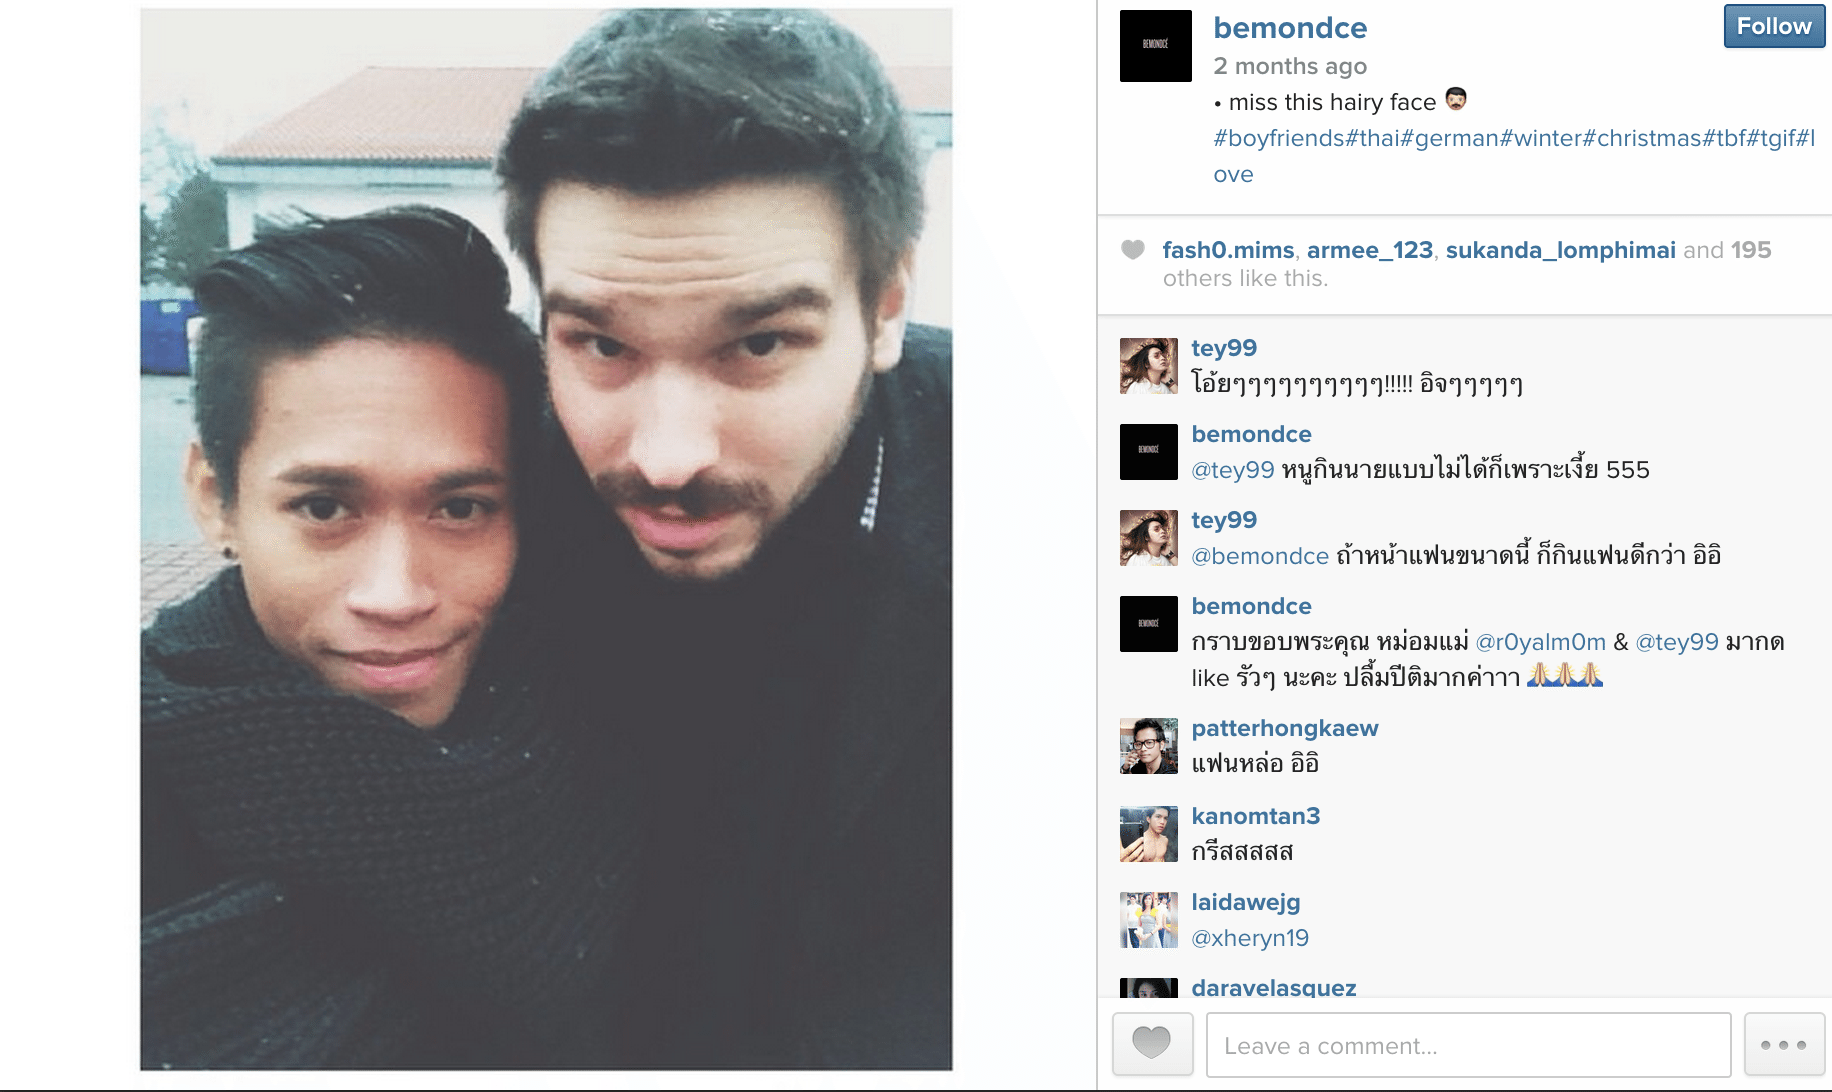 bemondce instagram thai gay with viral cute german caucasian boyfriend